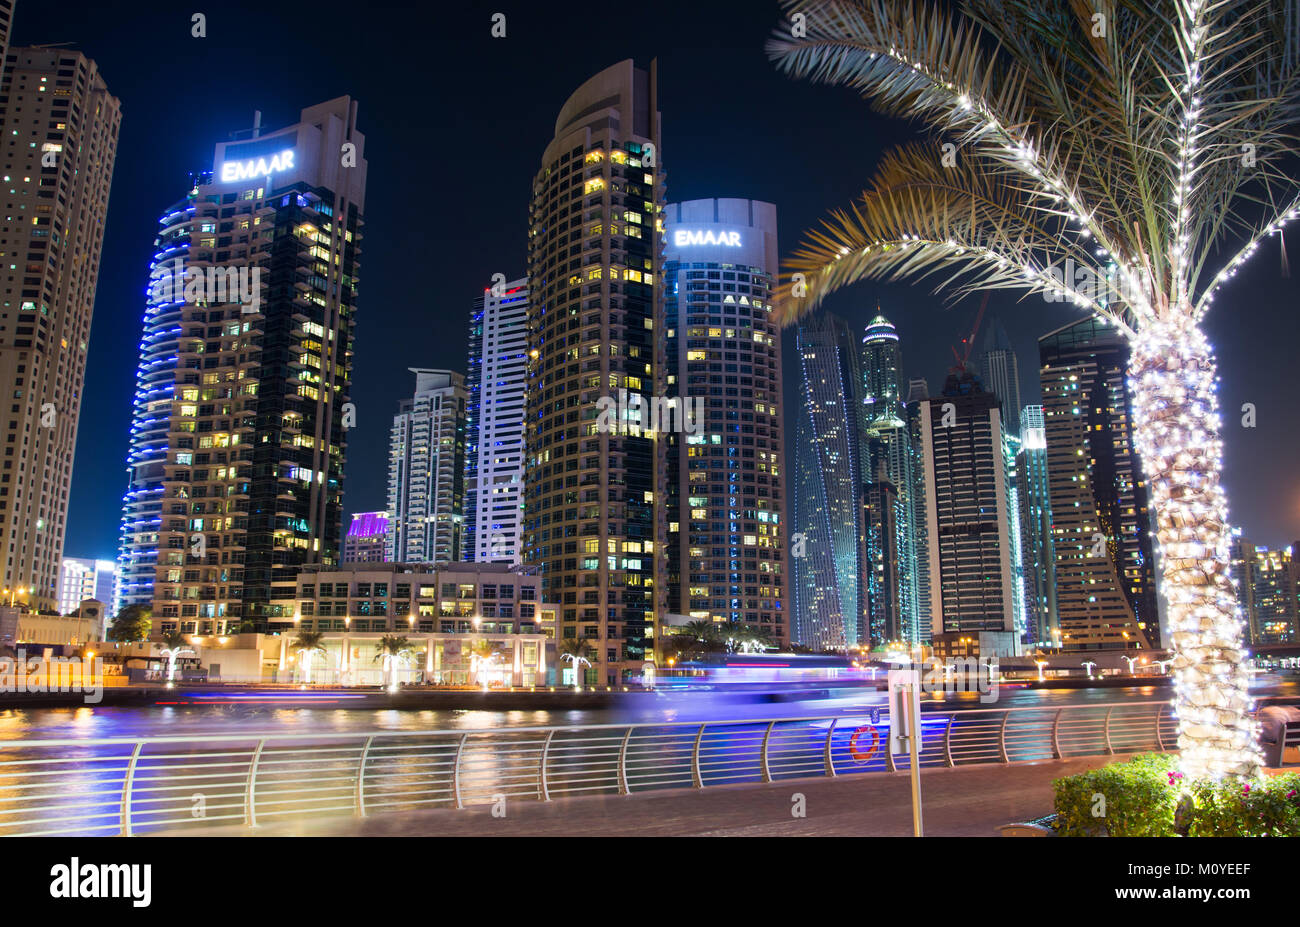 DUBAI, VEREINIGTE ARABISCHE EMIRATE - NOVEMBER 4, 2017: Dubai Marina Nacht Szene mit modernen Wolkenkratzern und ruhigem Wasser Stockfoto